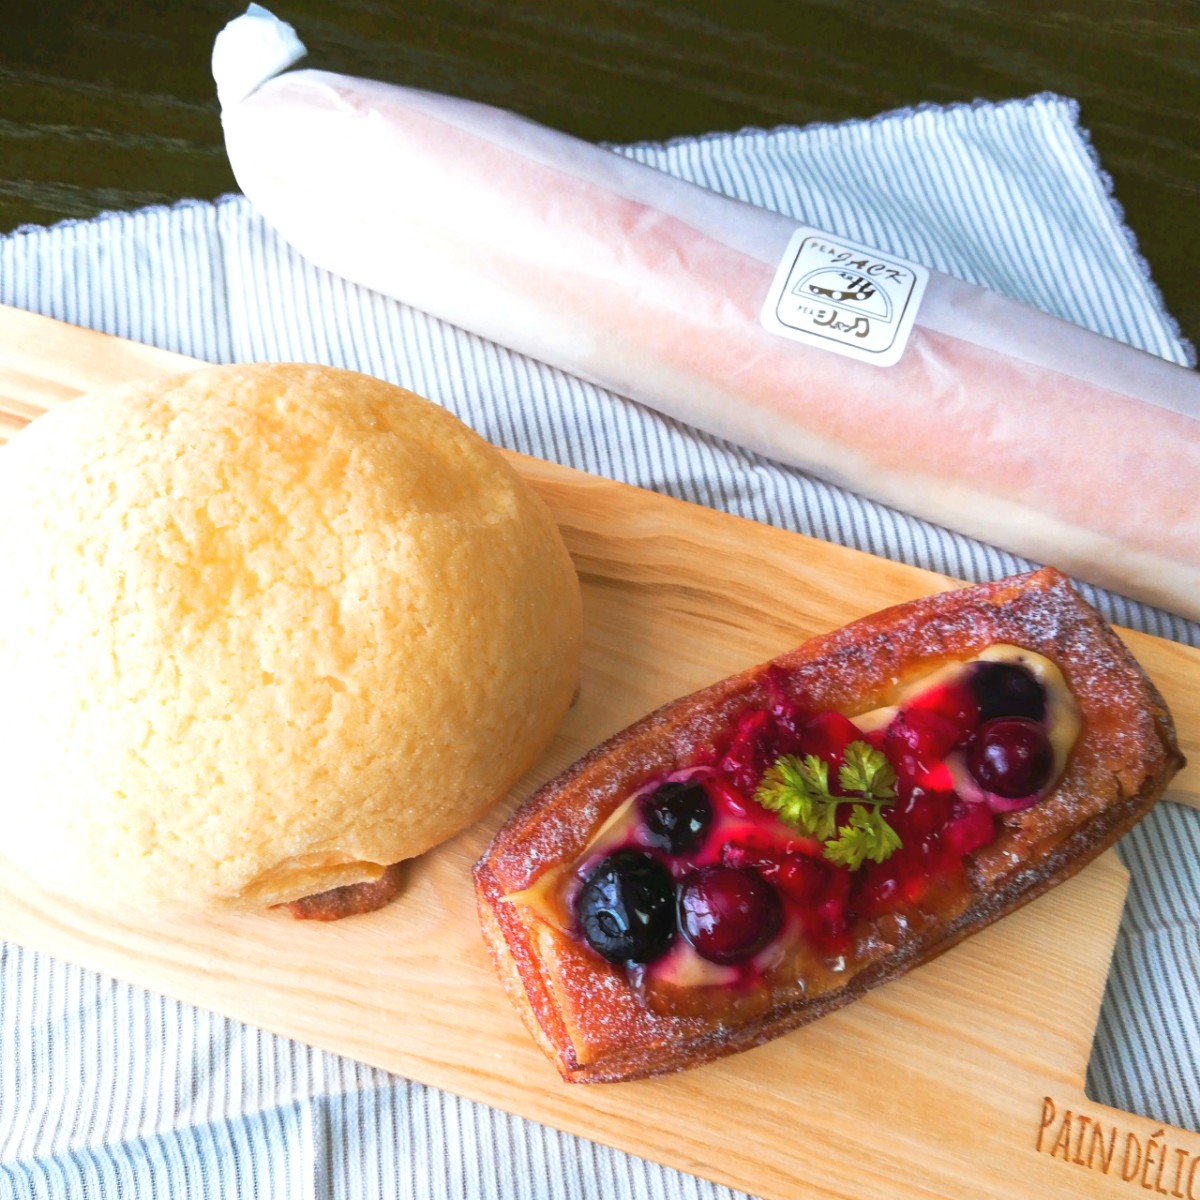 豊田のジャック 大人気の美味しいパン屋をレポします 岡崎にゅーす